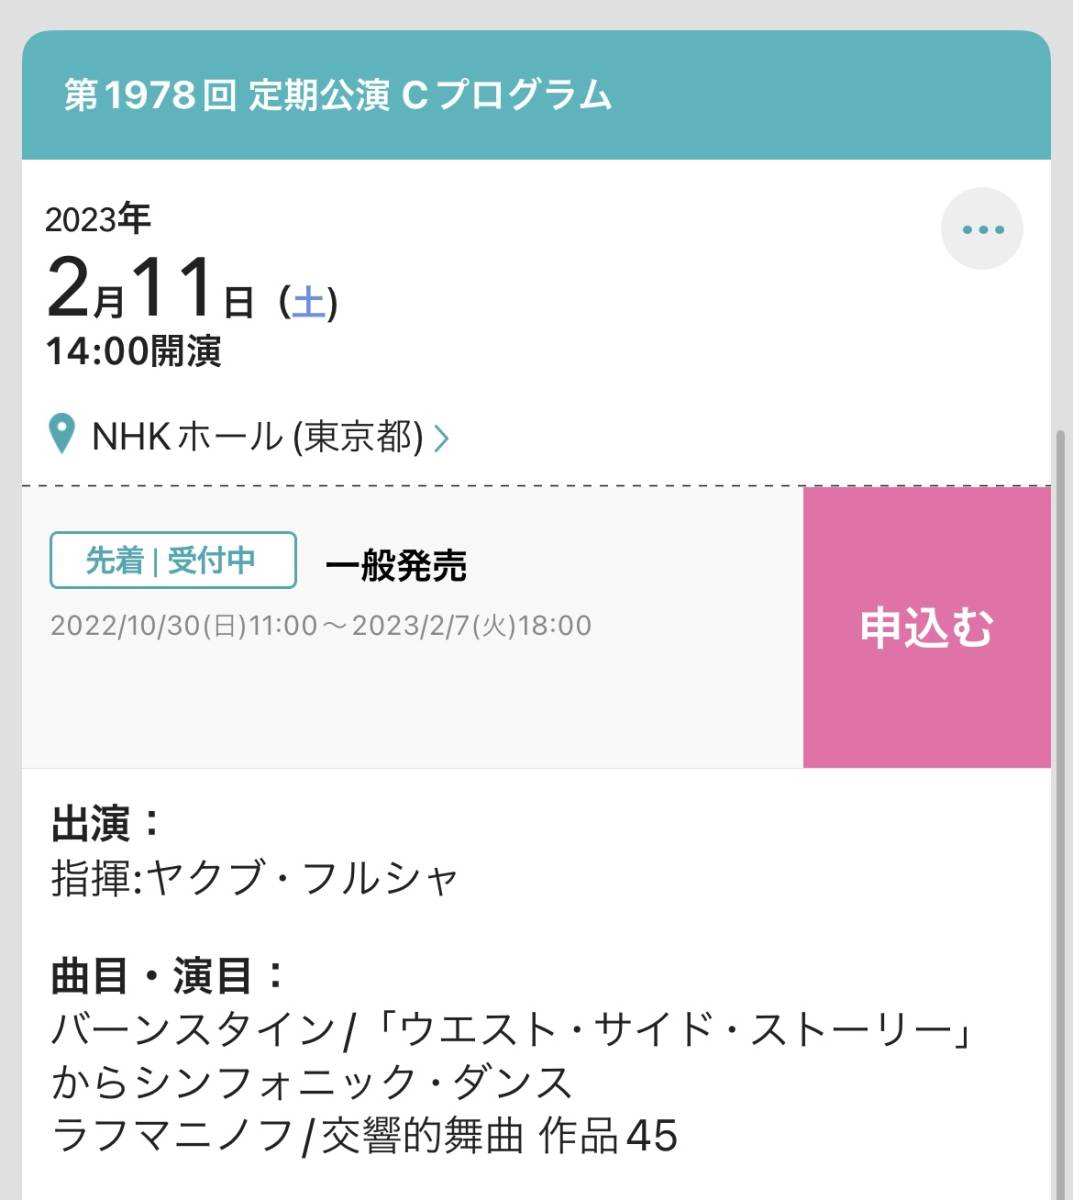 2023年2月11日 NHK交響楽団 定期公演Cプログラム S席チケット2枚 NHKホール ４割引き 送料無料の画像2